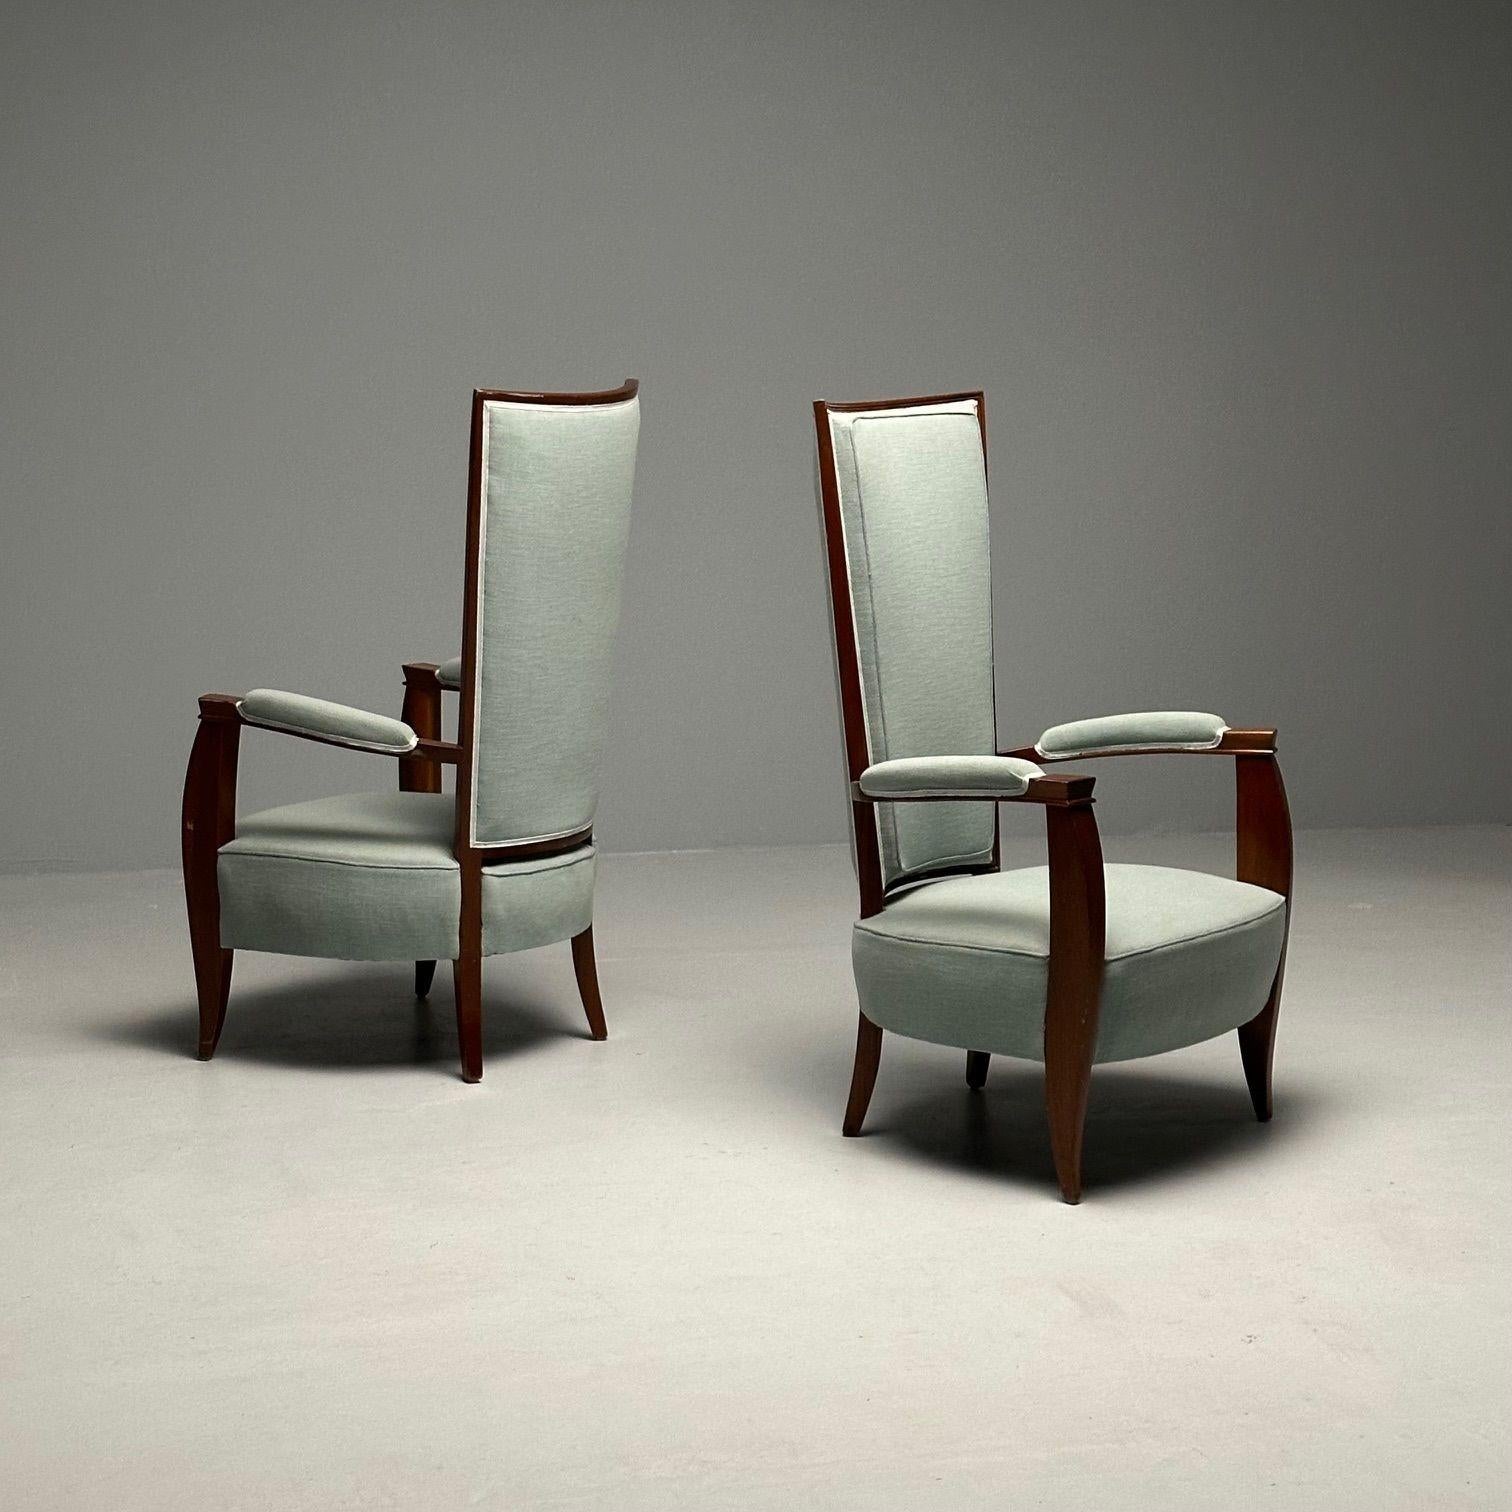 Französische Art déco-Stühle mit hoher Rückenlehne, Mahagoni, türkisfarbenes Leinen, Frankreich, 1970er Jahre (Ende des 20. Jahrhunderts)